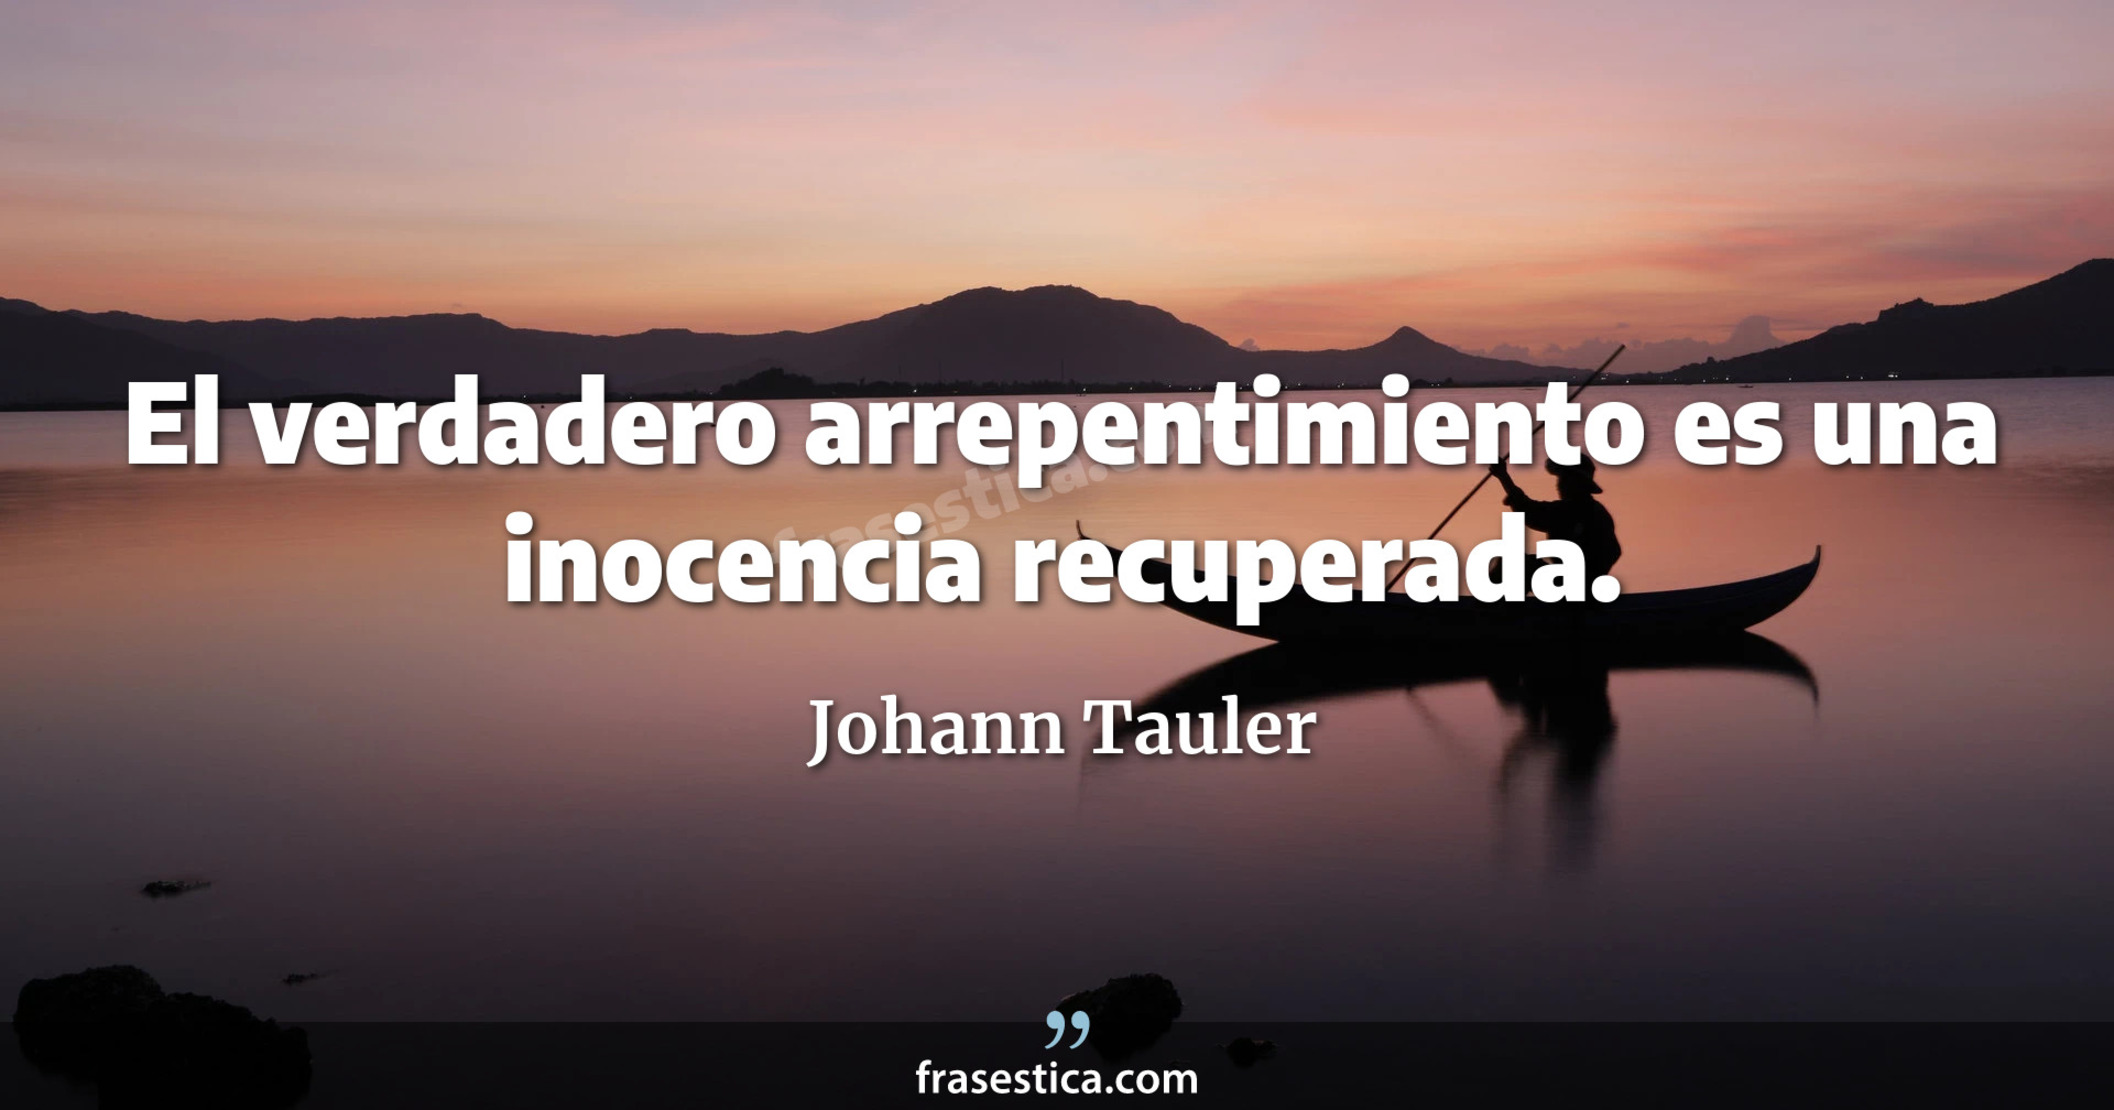 El verdadero arrepentimiento es una inocencia recuperada. - Johann Tauler